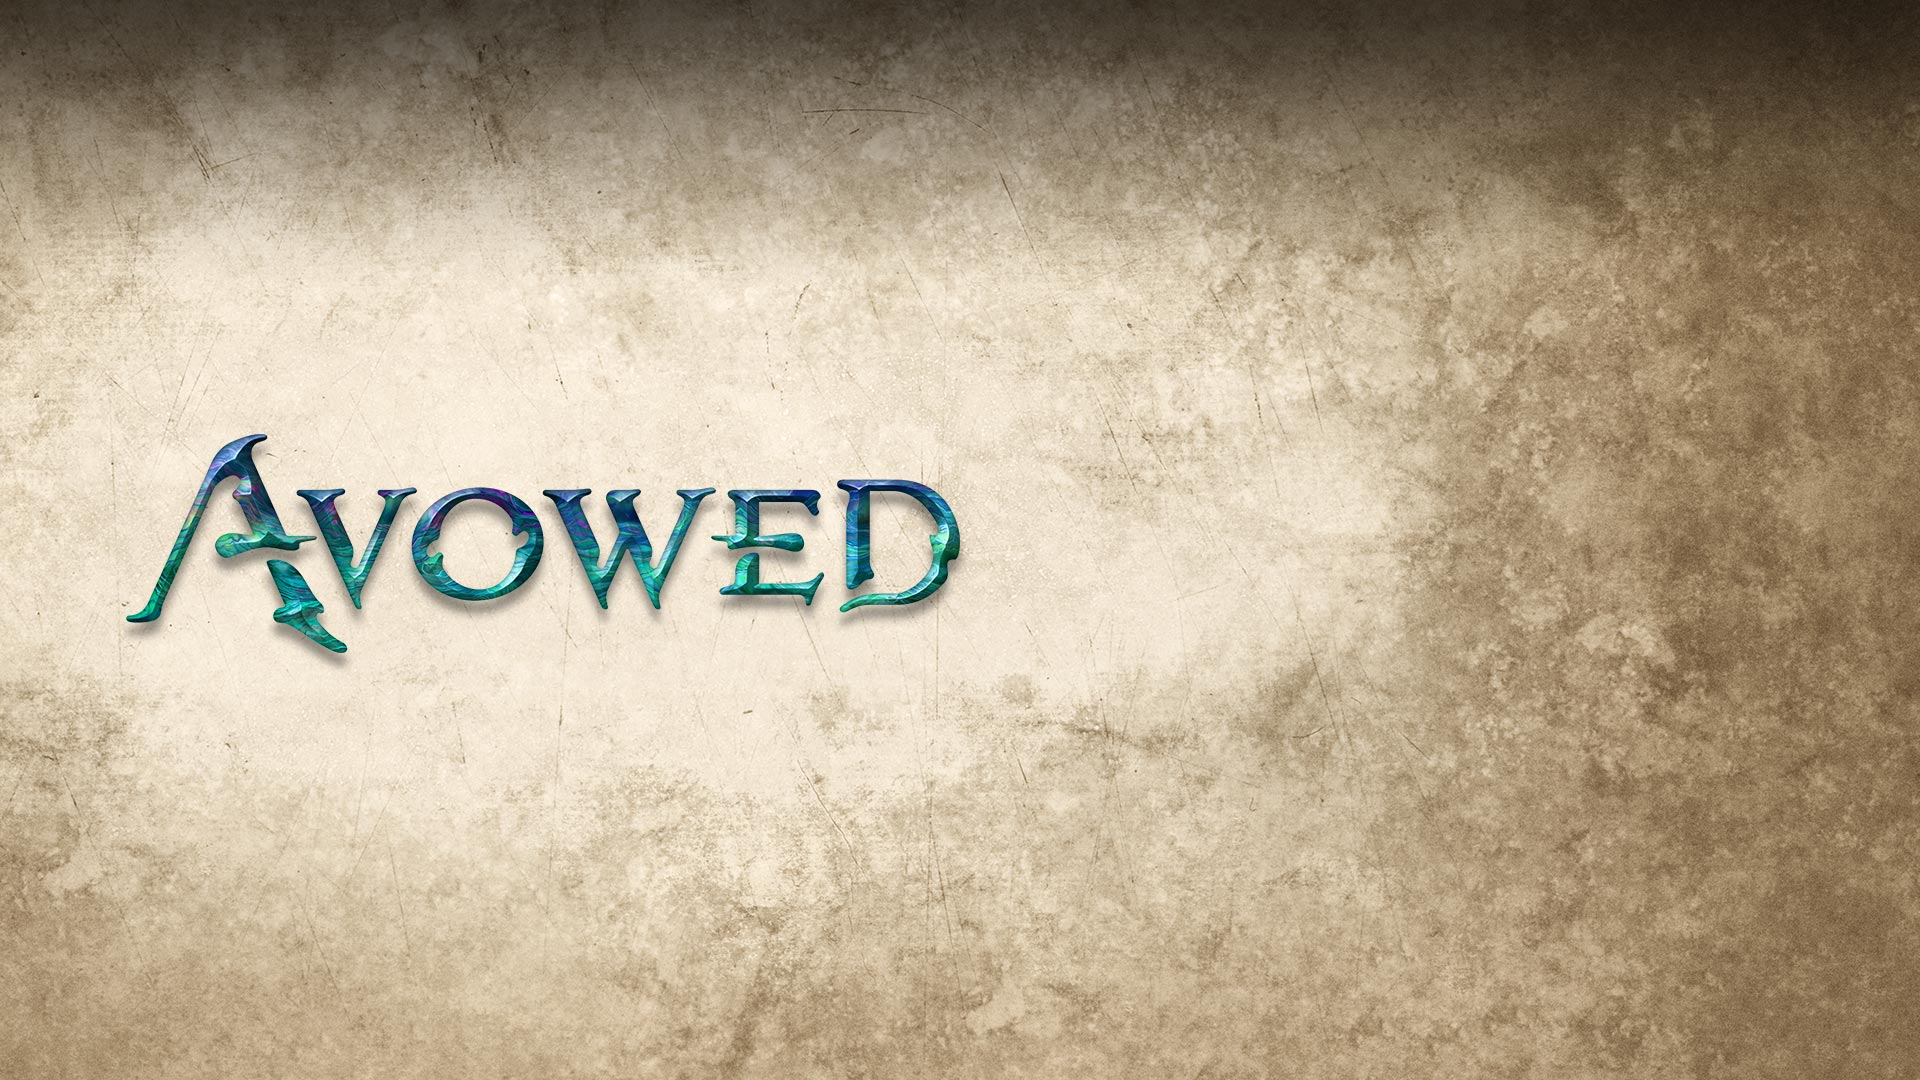 『Avowed』のロゴ